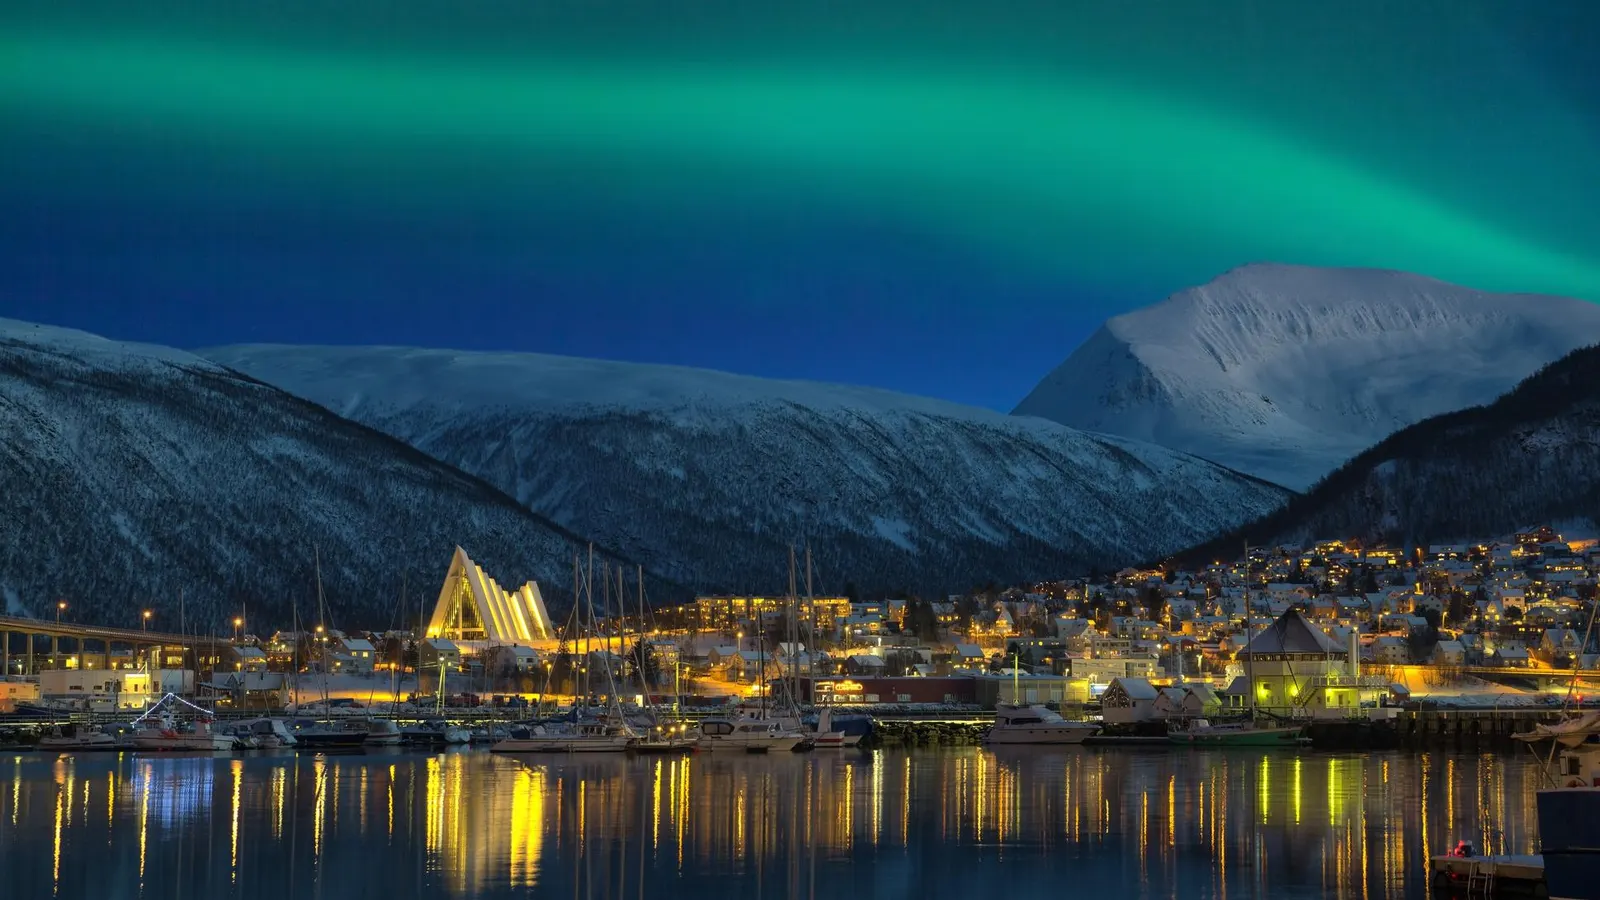 Escandinavia y sus aurorar boreales